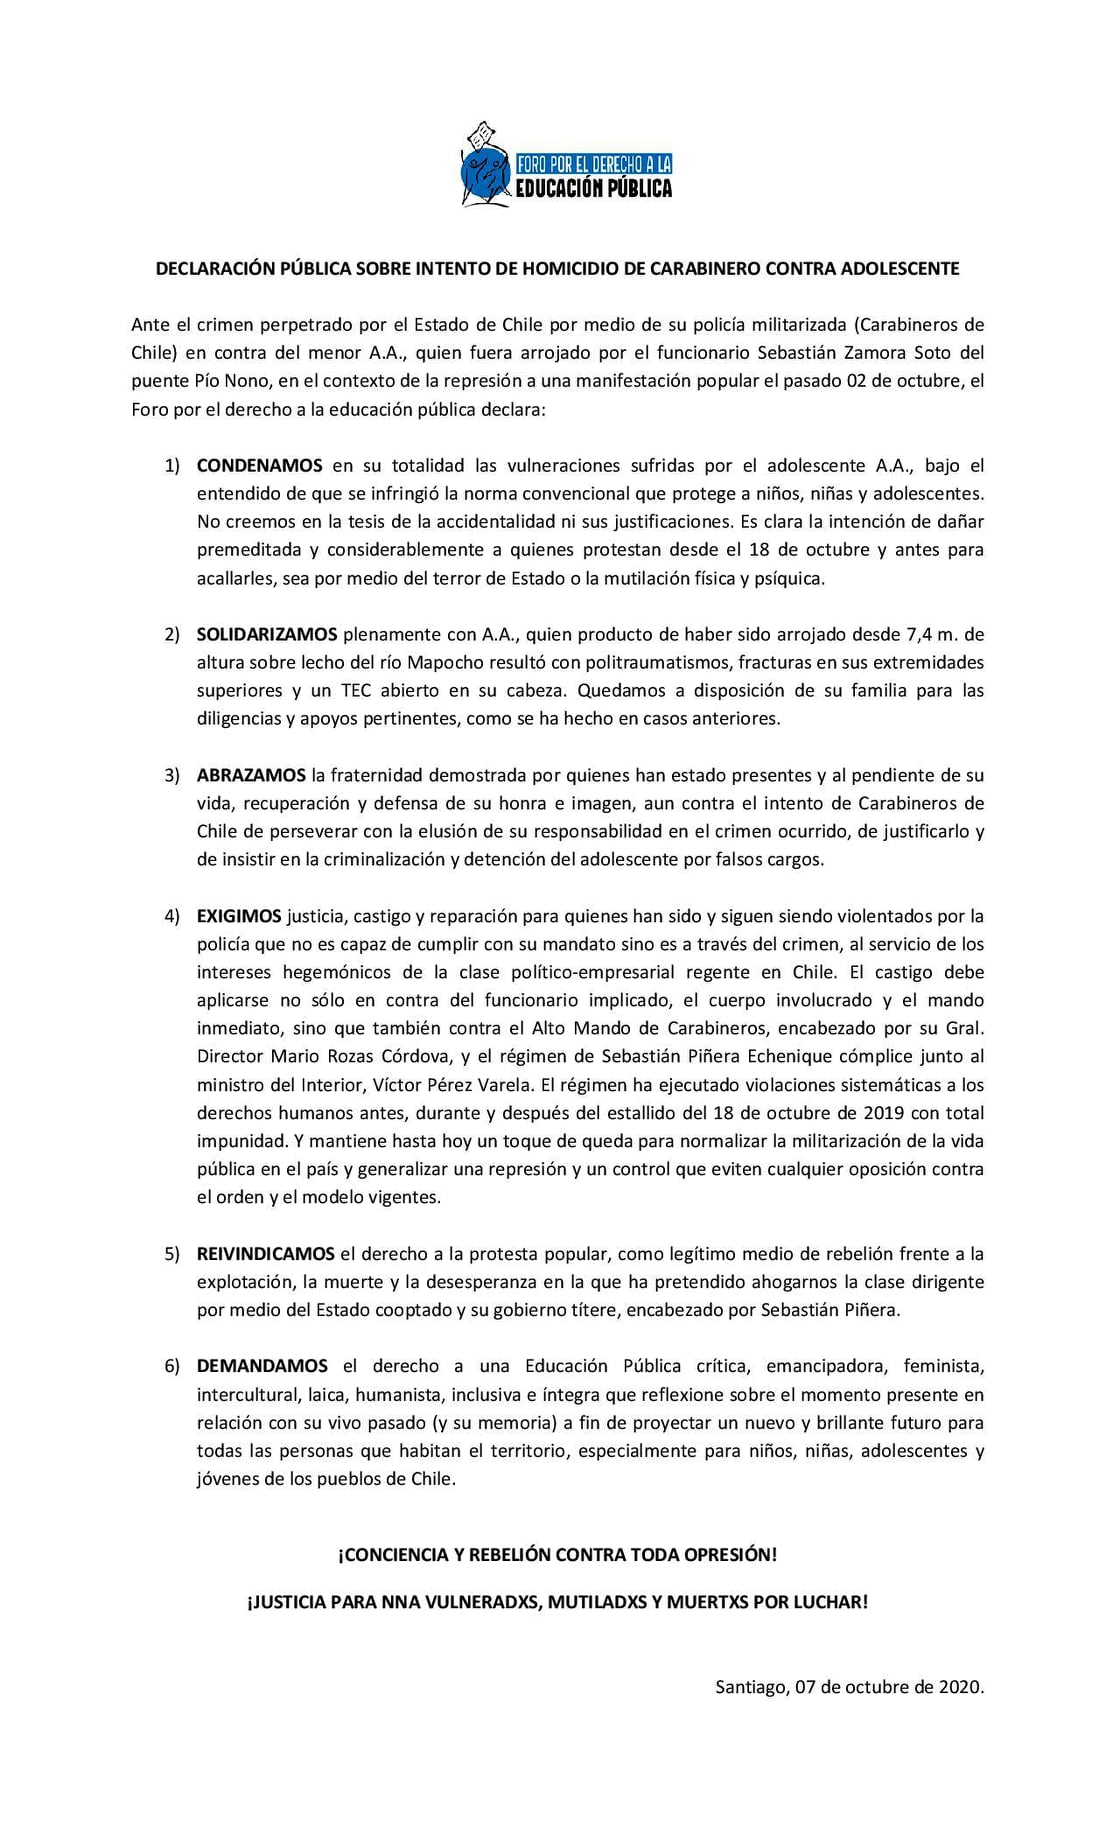 FODEP: Declaración Pública sobre Intento de Homicidio de Carabinero contra Adolescente